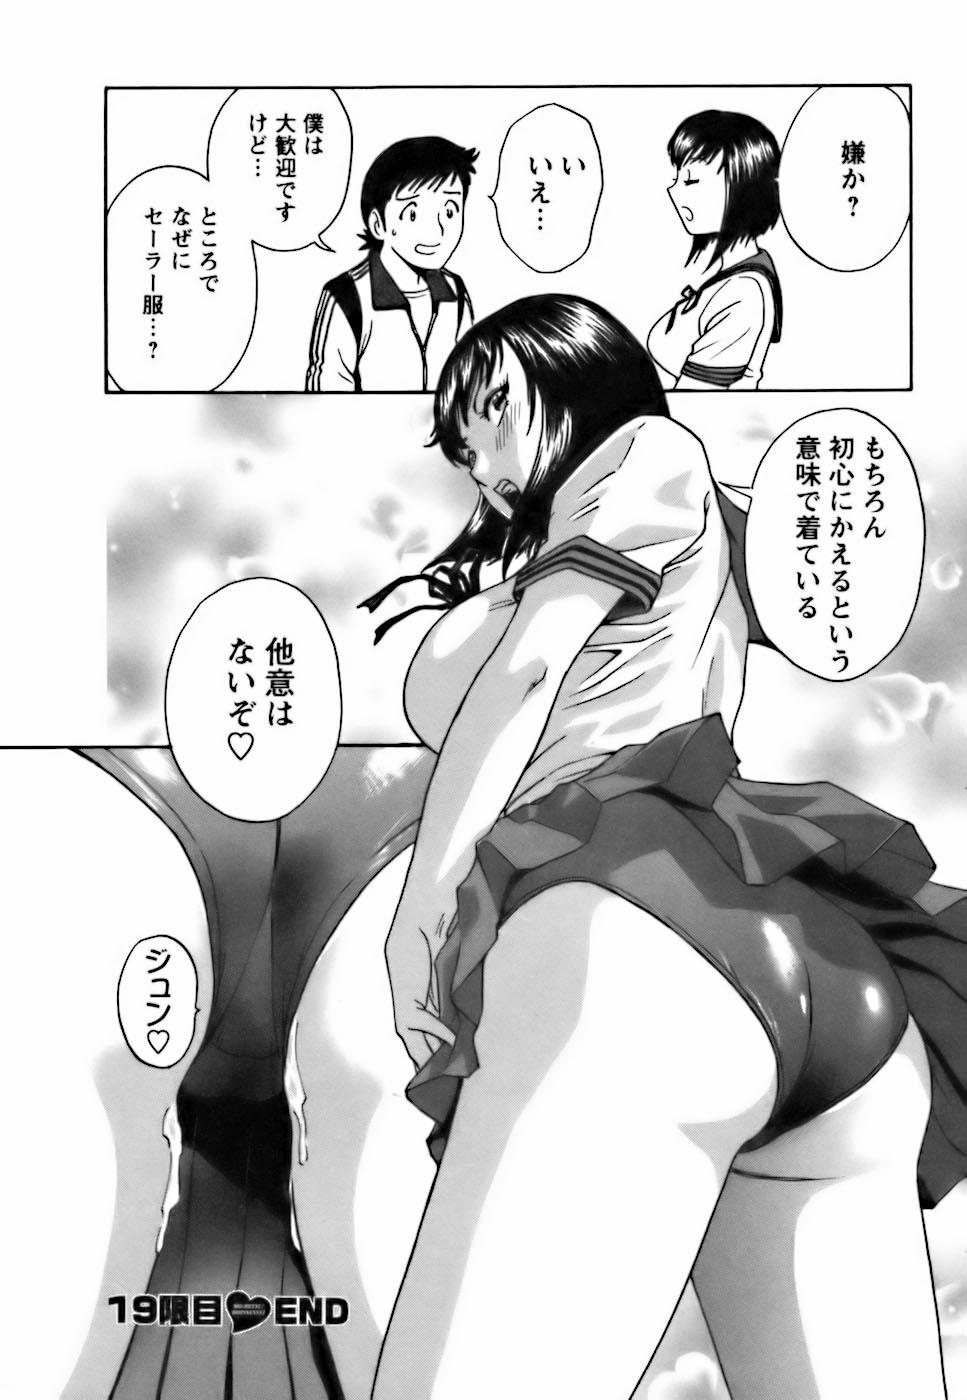 [Hidemaru] Mo-Retsu! Boin Sensei (Boing Boing Teacher) Vol.3 25